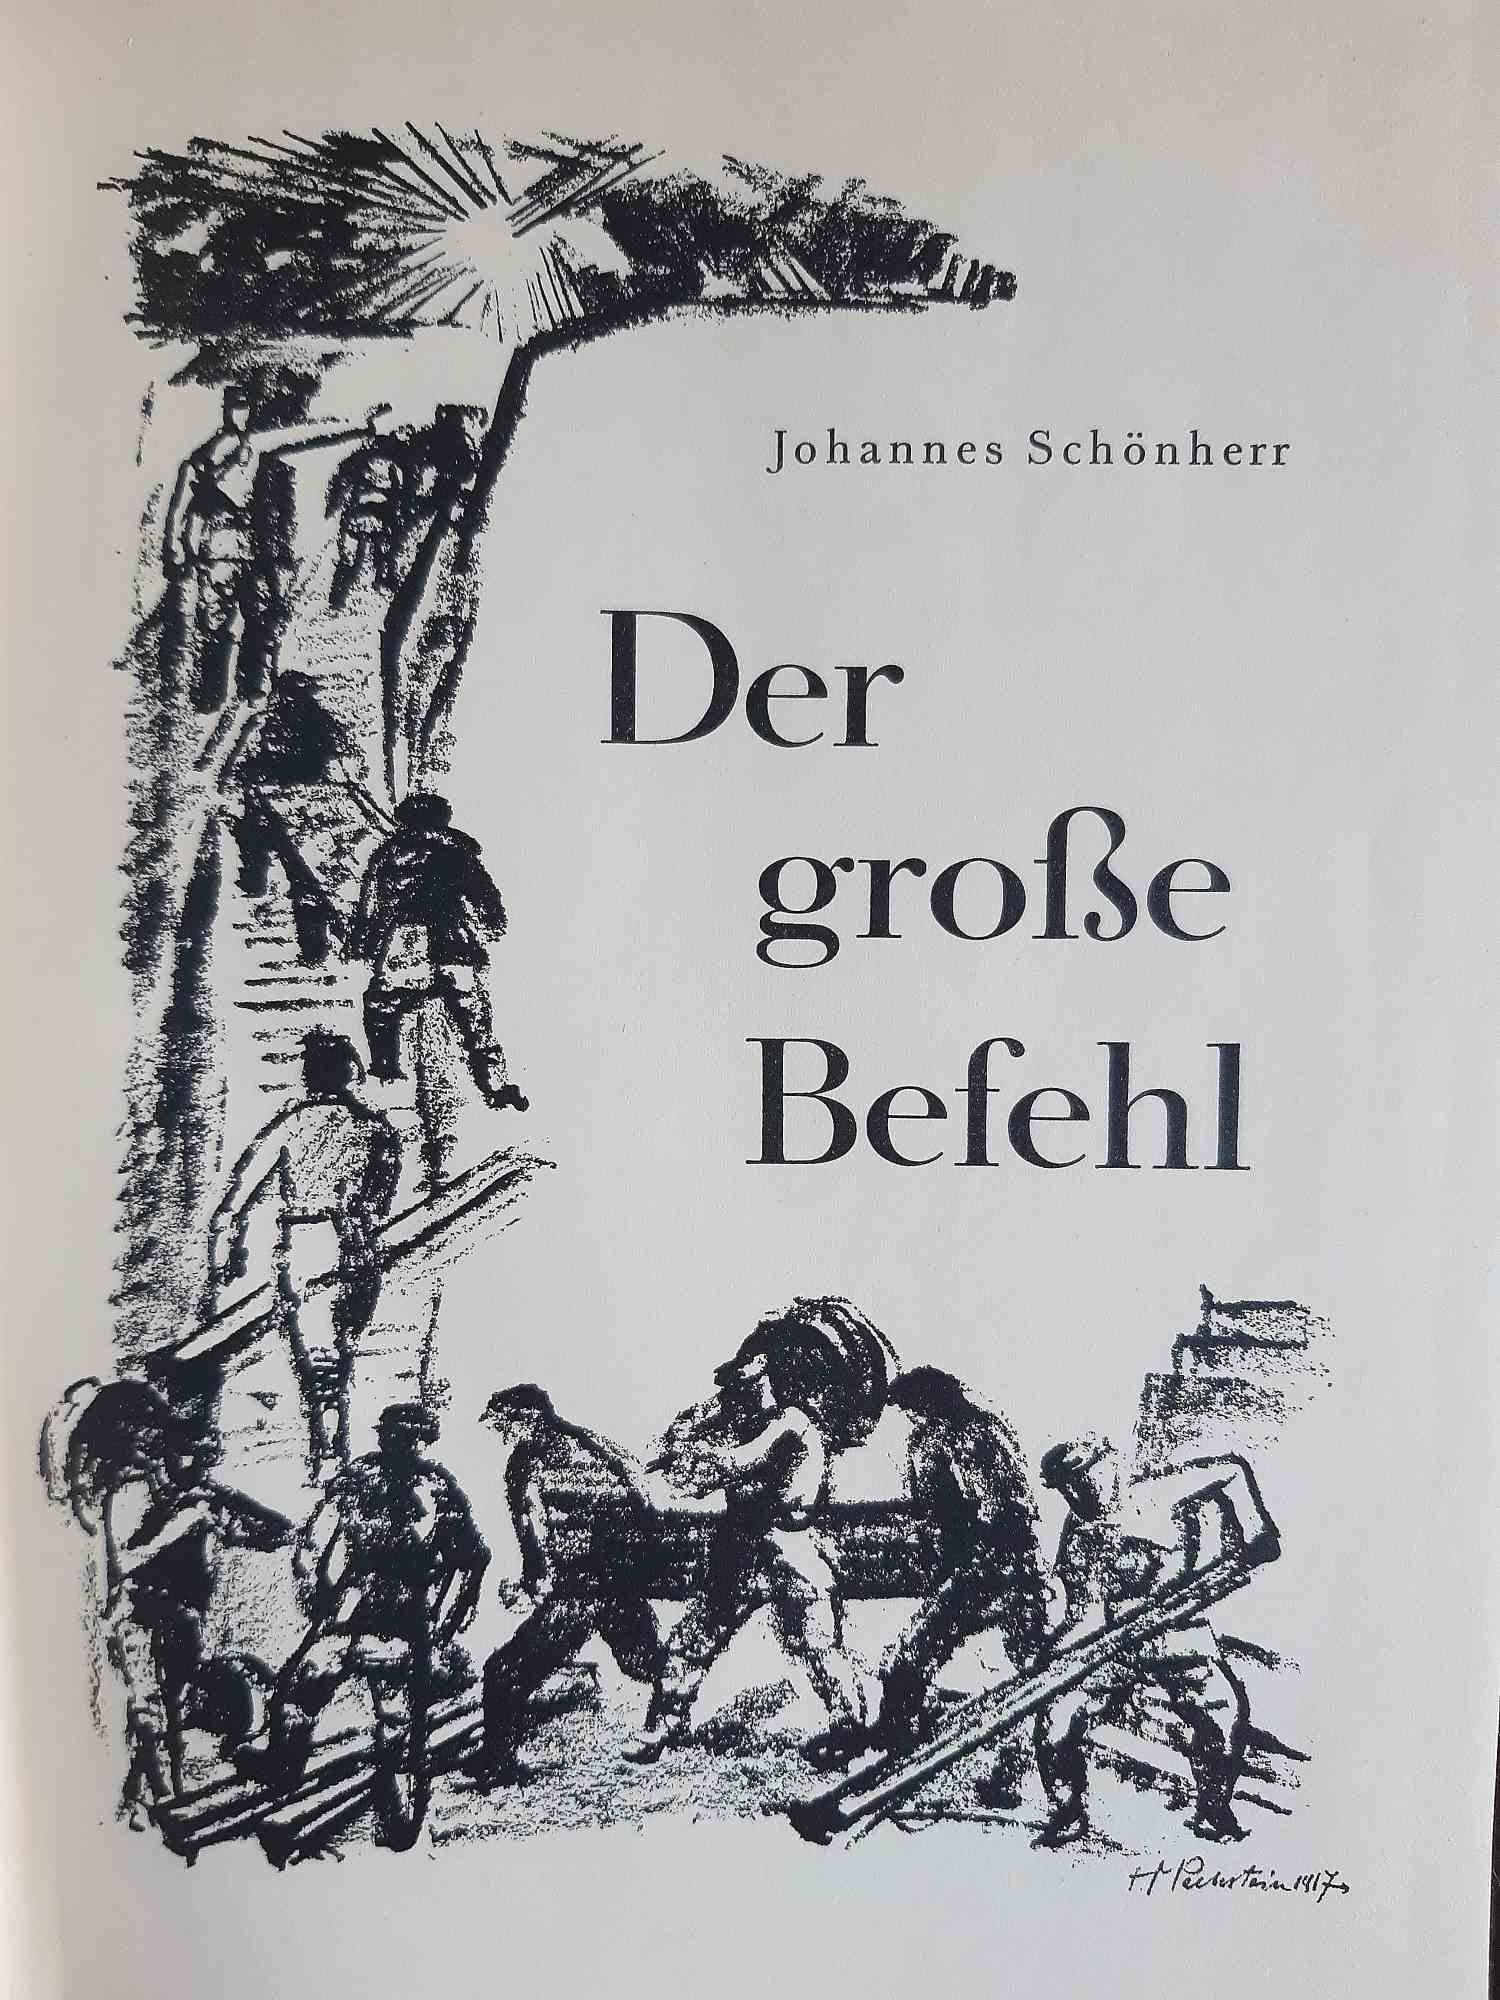 Die Grosse Befehl - Livre illustré de Max Pechstein - 1933 - Expressionniste Print par Hermann Max Pechstein